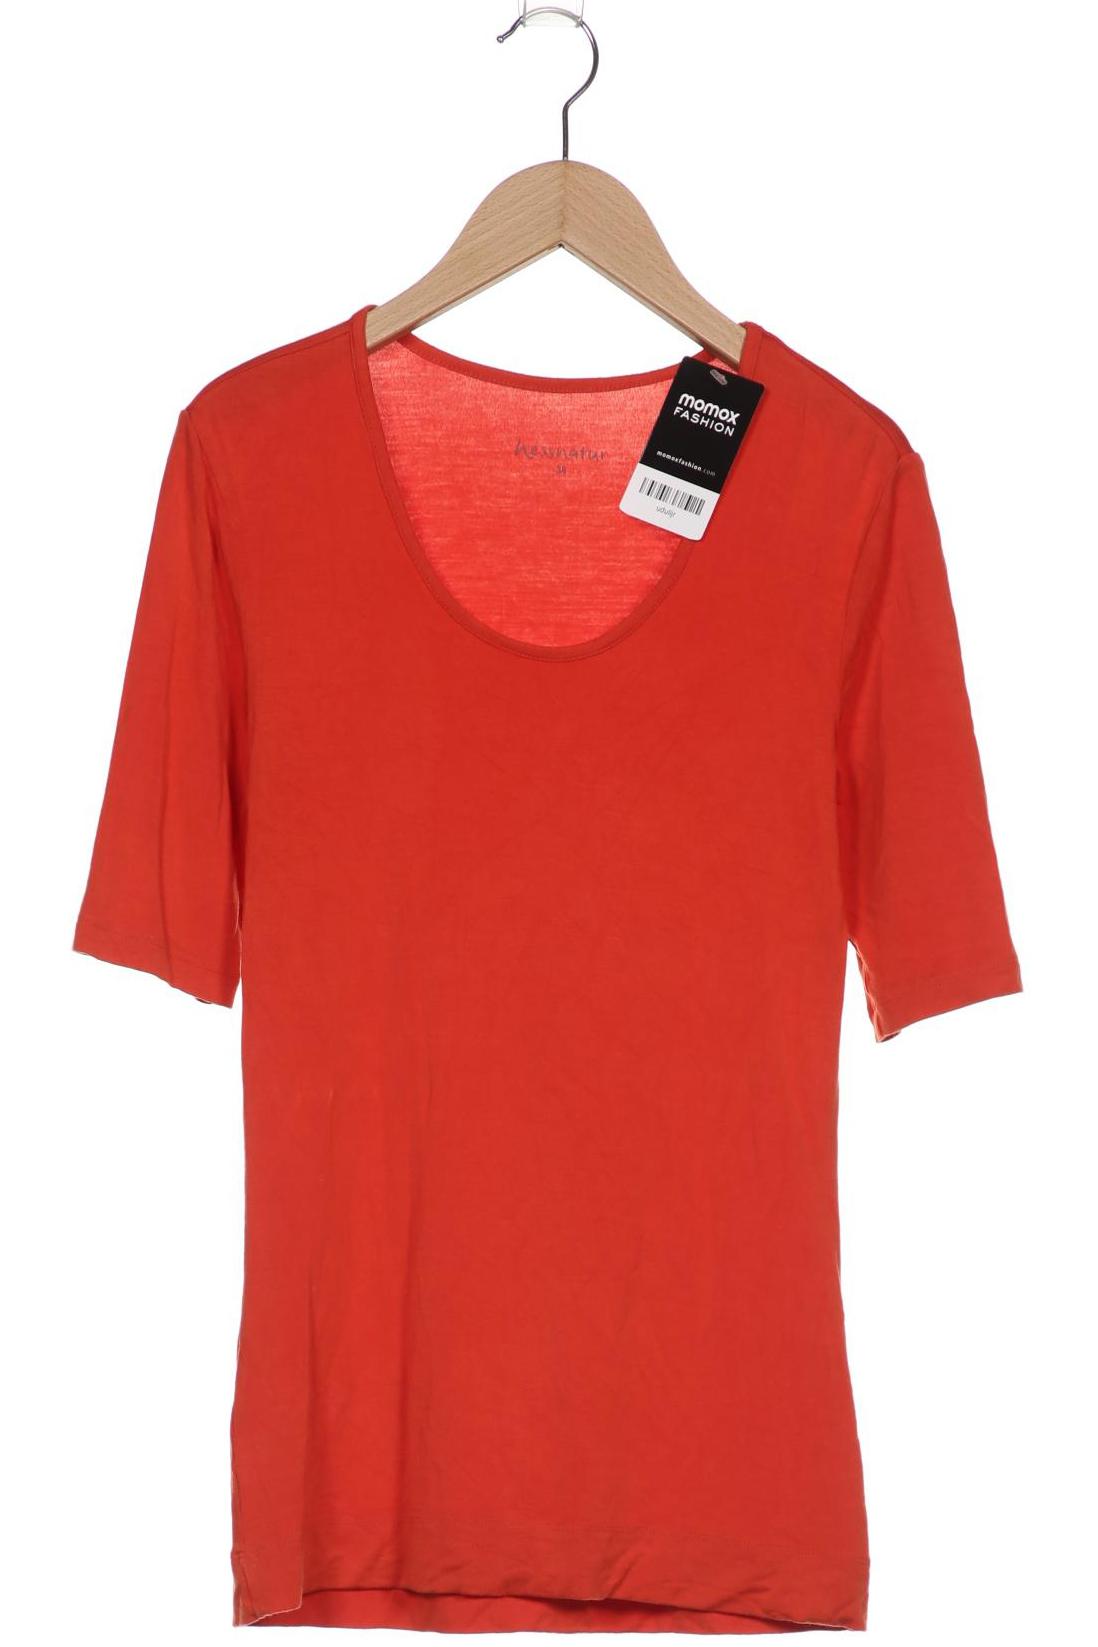 hessnatur Damen T-Shirt, orange, Gr. 38 von hessnatur